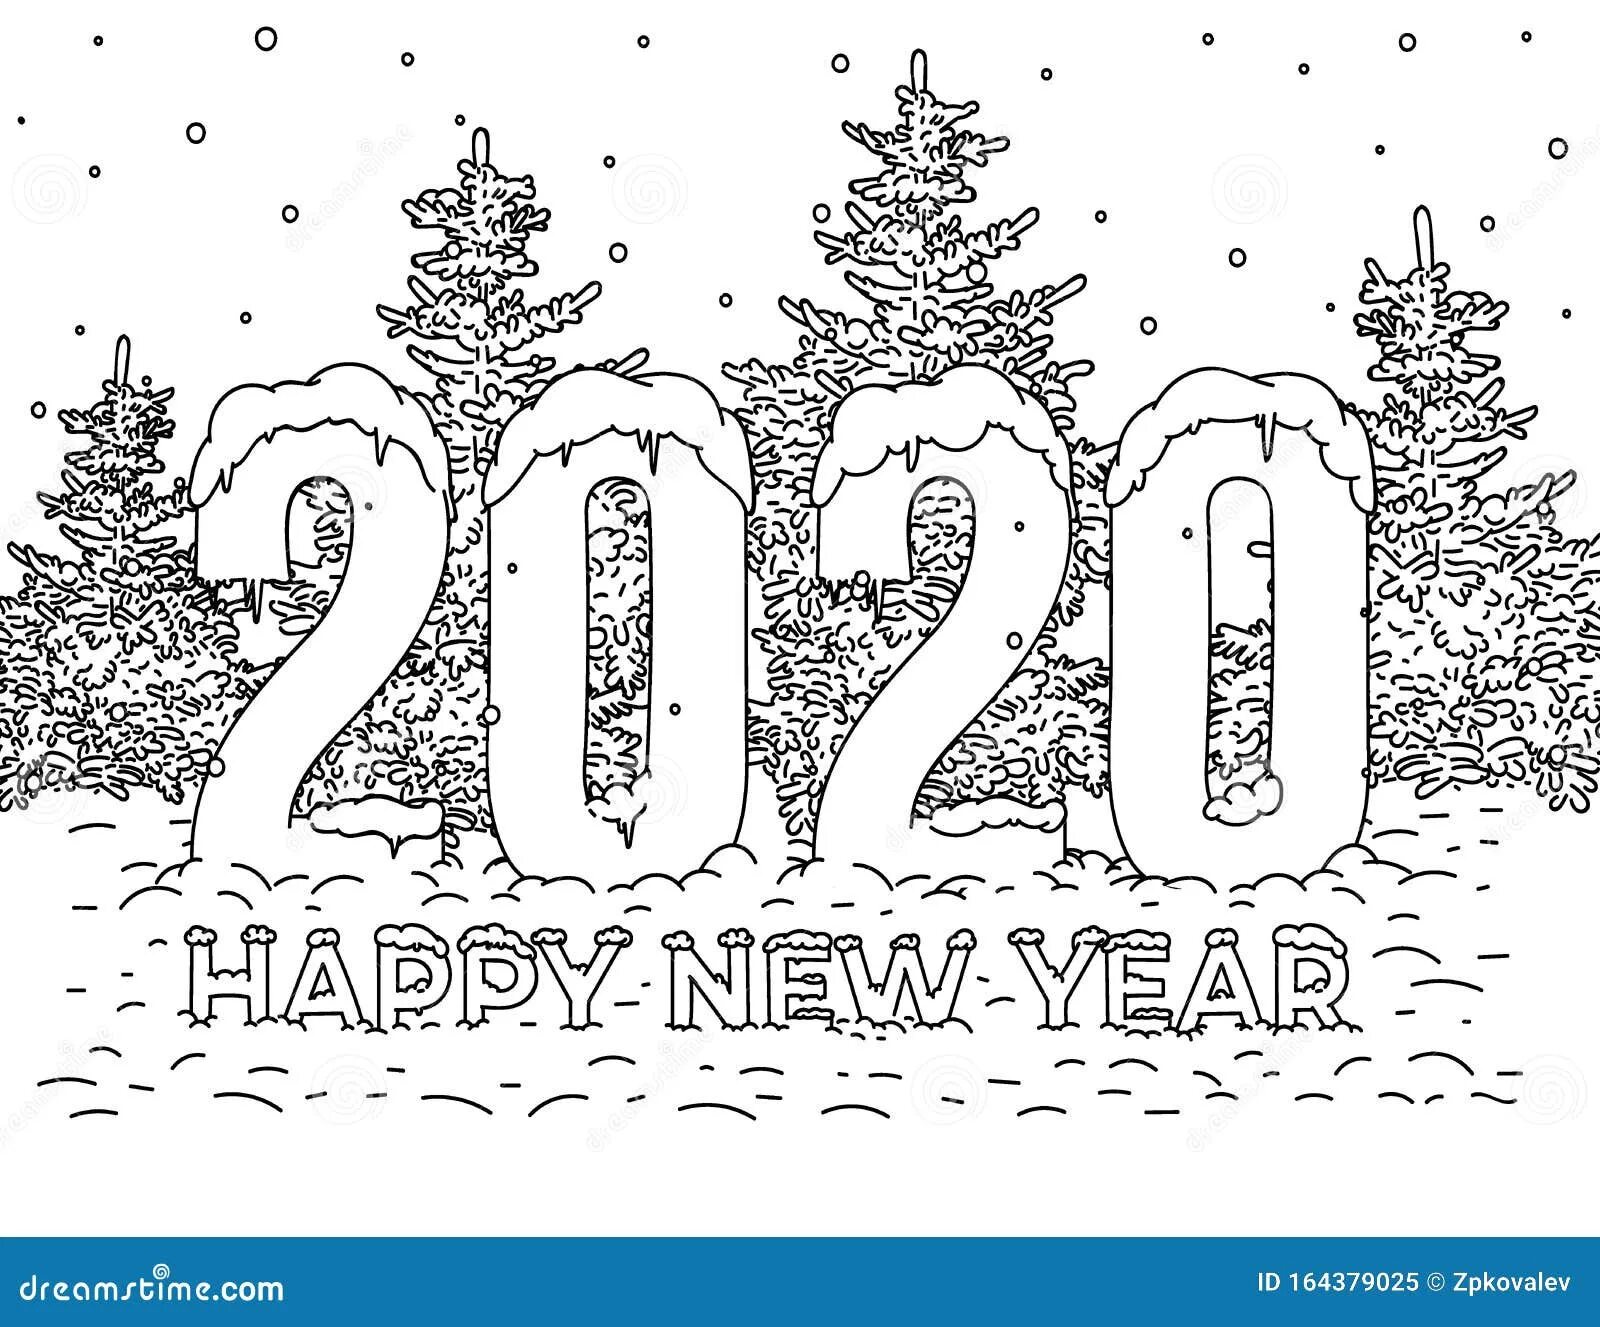 Черно белая открытка с новым годом. Рисунки на новый год 2022. Рисунок на новый год 2023. Открытка на новый год 2017 черно белая. Новый 2024 рисунок